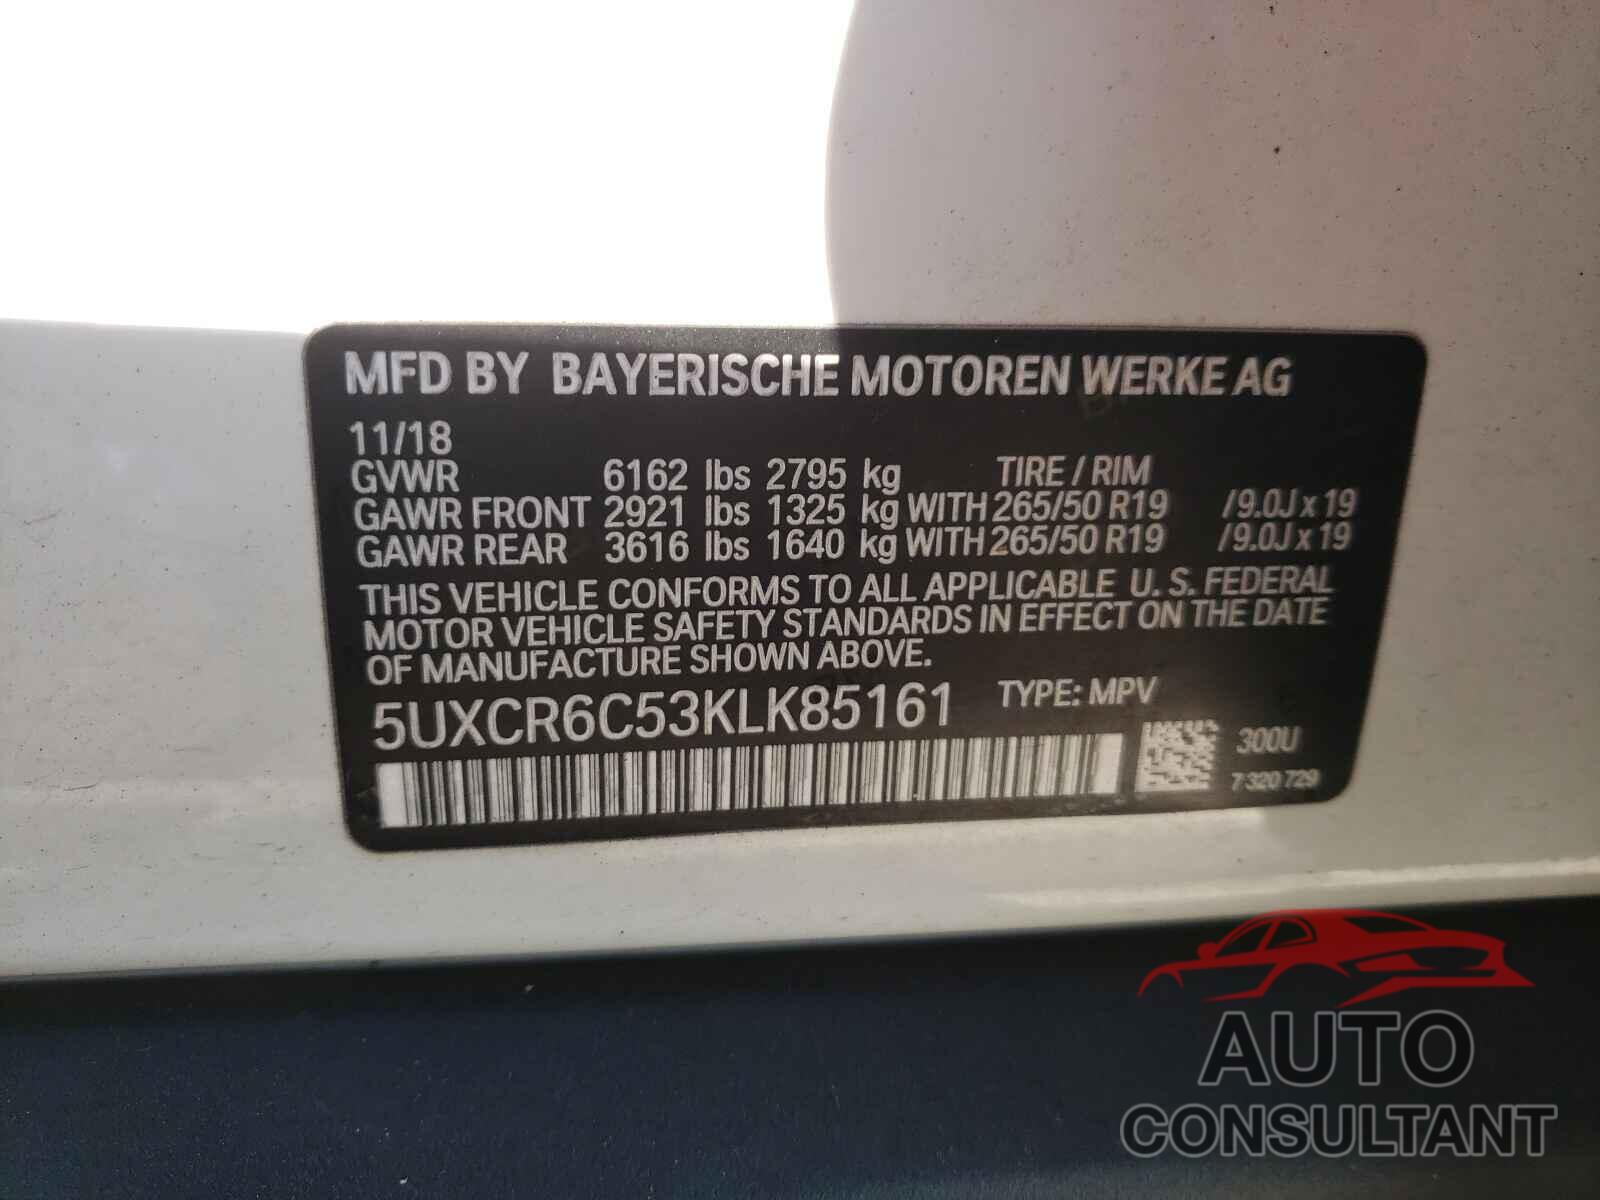 BMW X5 2019 - 5UXCR6C53KLK85161